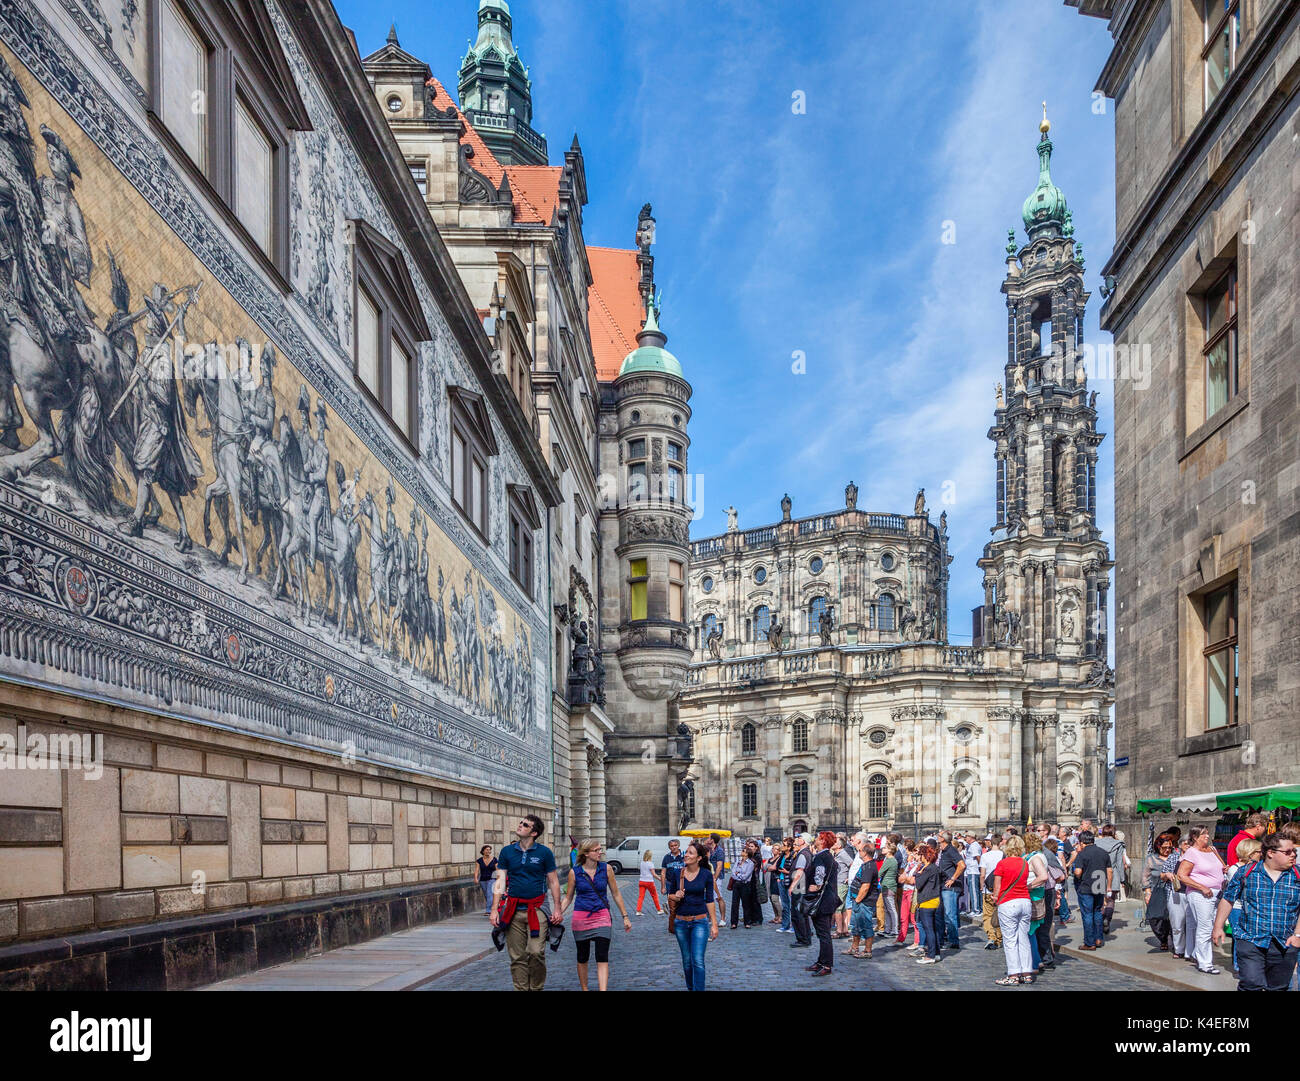 Allemagne, Saxe, Dresde, vue sur les 'Fürstenzug' Procession des Princes, une peinture murale de 102 mètres de long, une procession à cheval des dirigeants de la Saxe, faites Banque D'Images